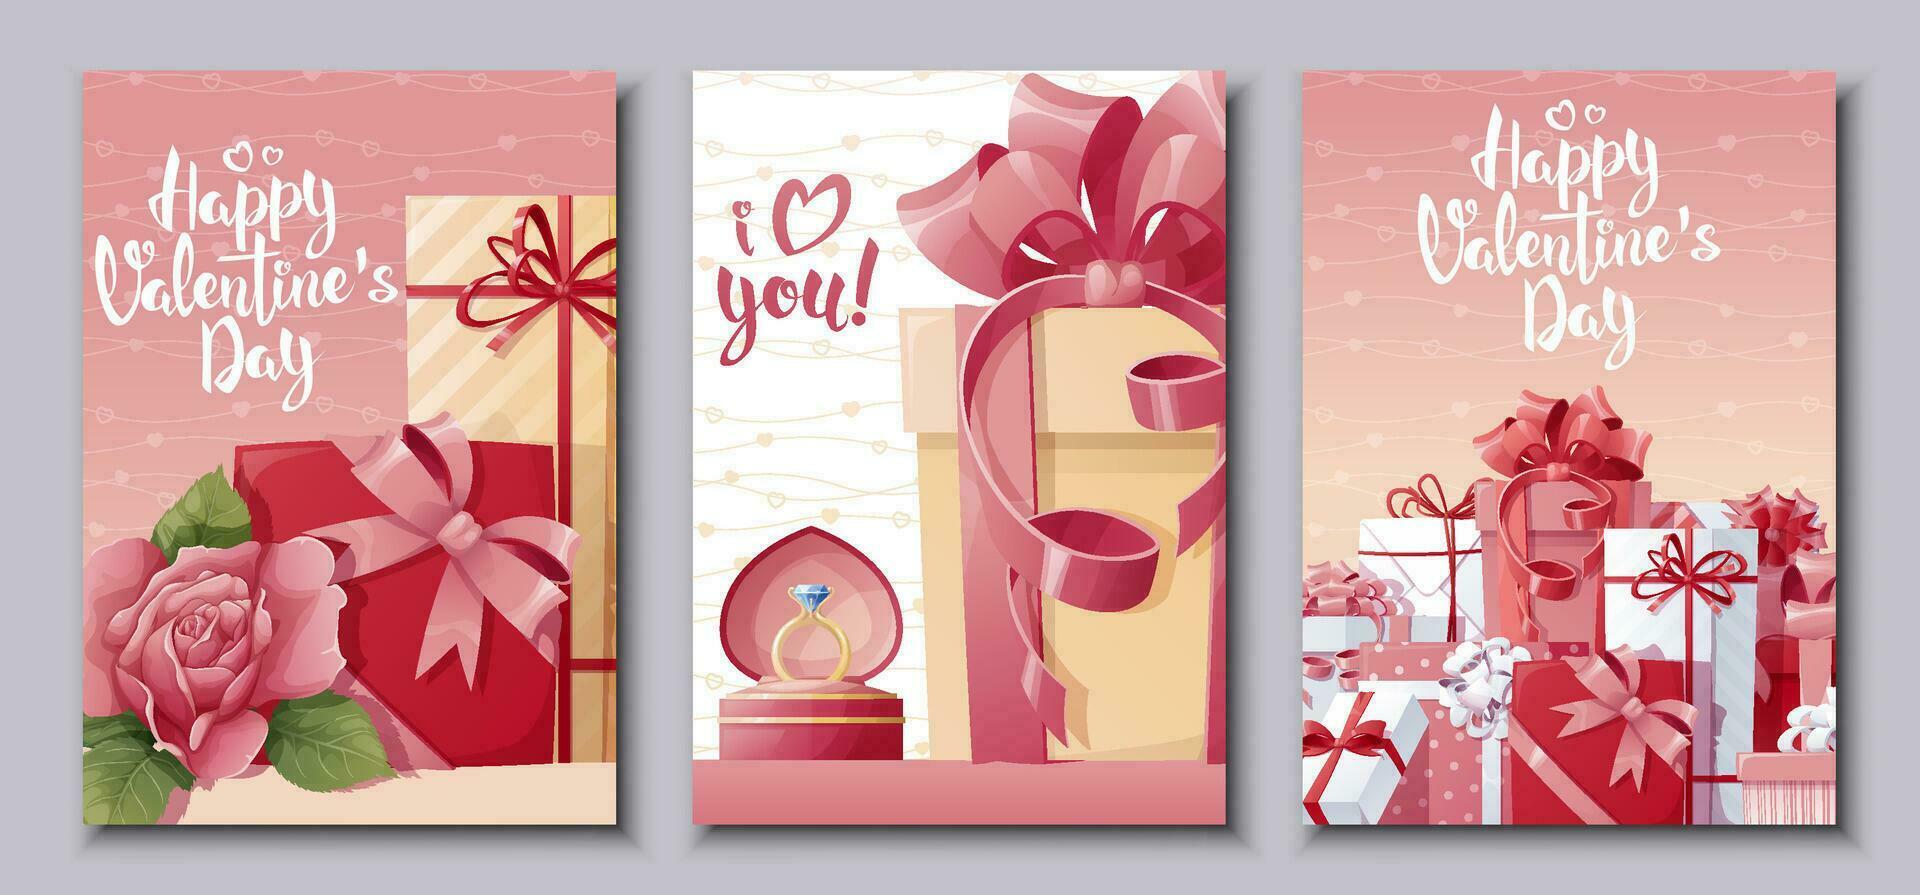 uppsättning av kort för Lycklig hjärtans dag.affisch med rosor, gåva. festlig ljus vykort, kärlek kreativ begrepp. a4 vektor illustration för baner, affisch, kort